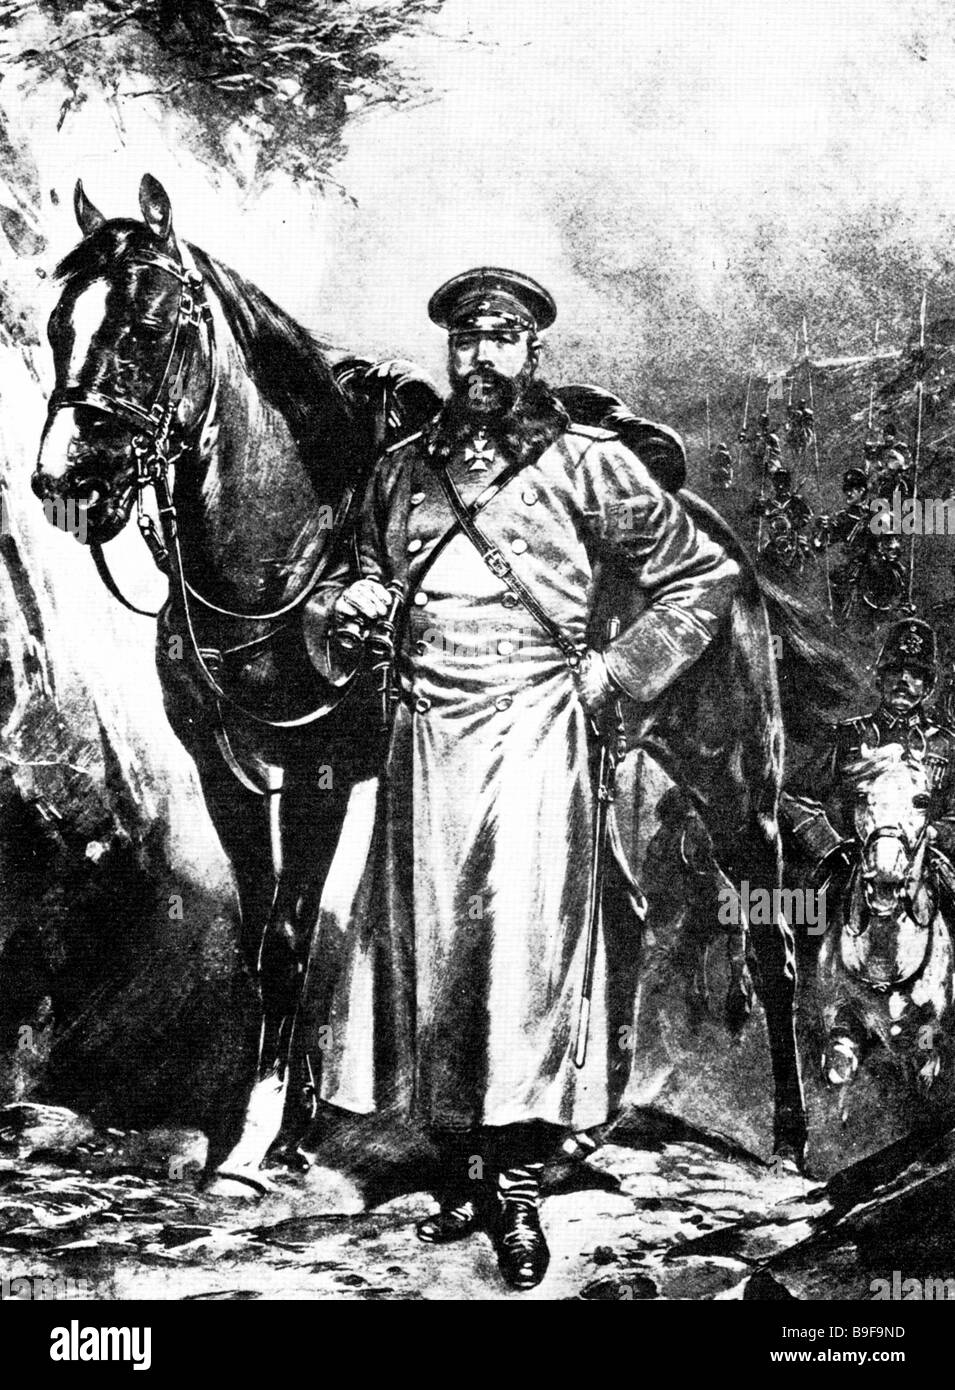 ALEKSEY KUROPATKIN Russisch kaiserlichen Minister des Krieges (1848 bis 1925) Stockfoto